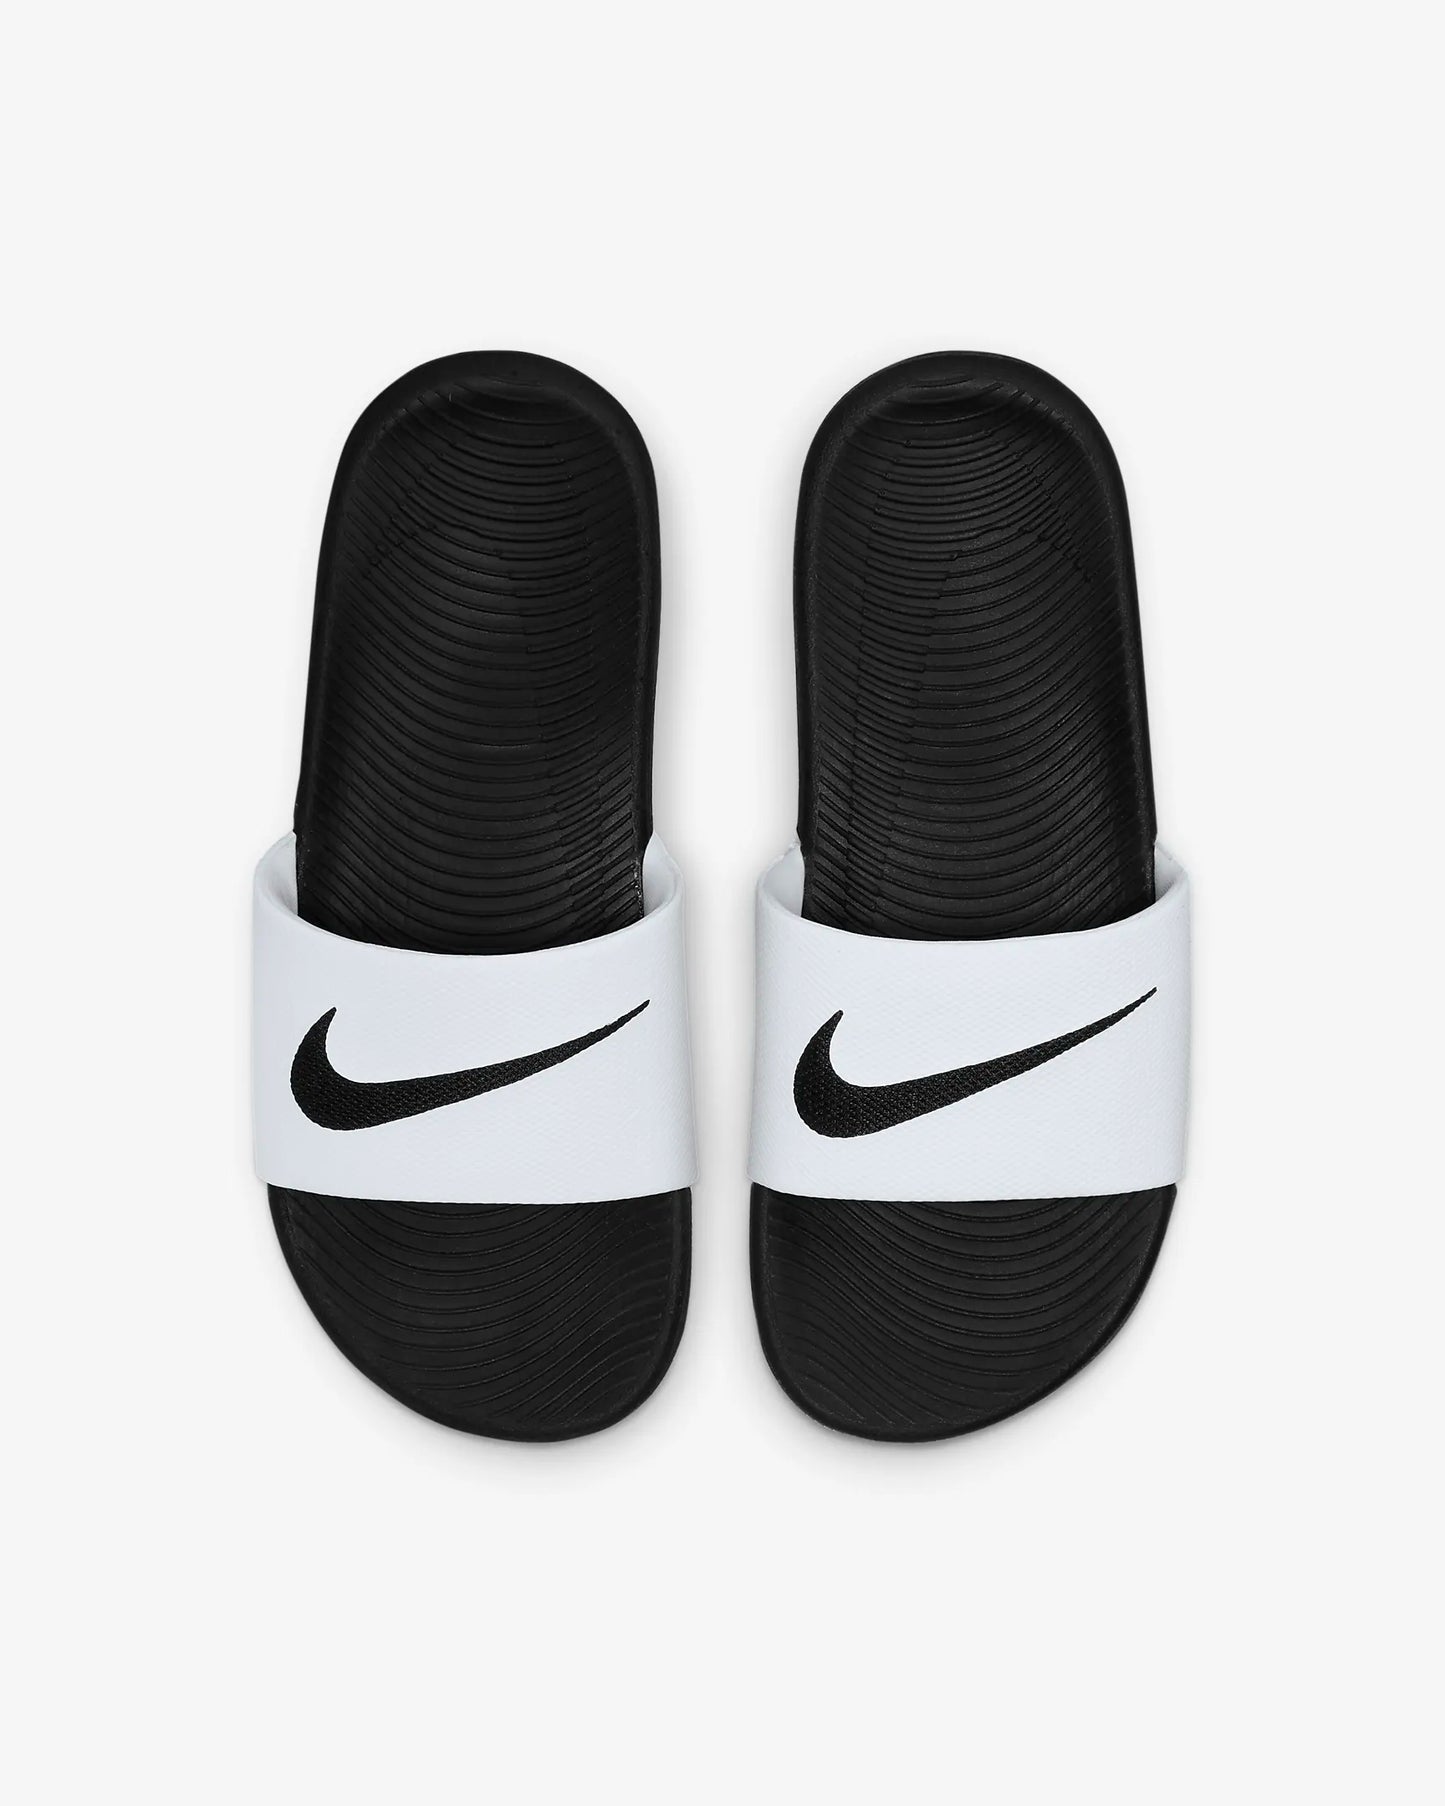 .Nike Kawa Kids Slides White/Black - WK - (819352-100) - R2L16